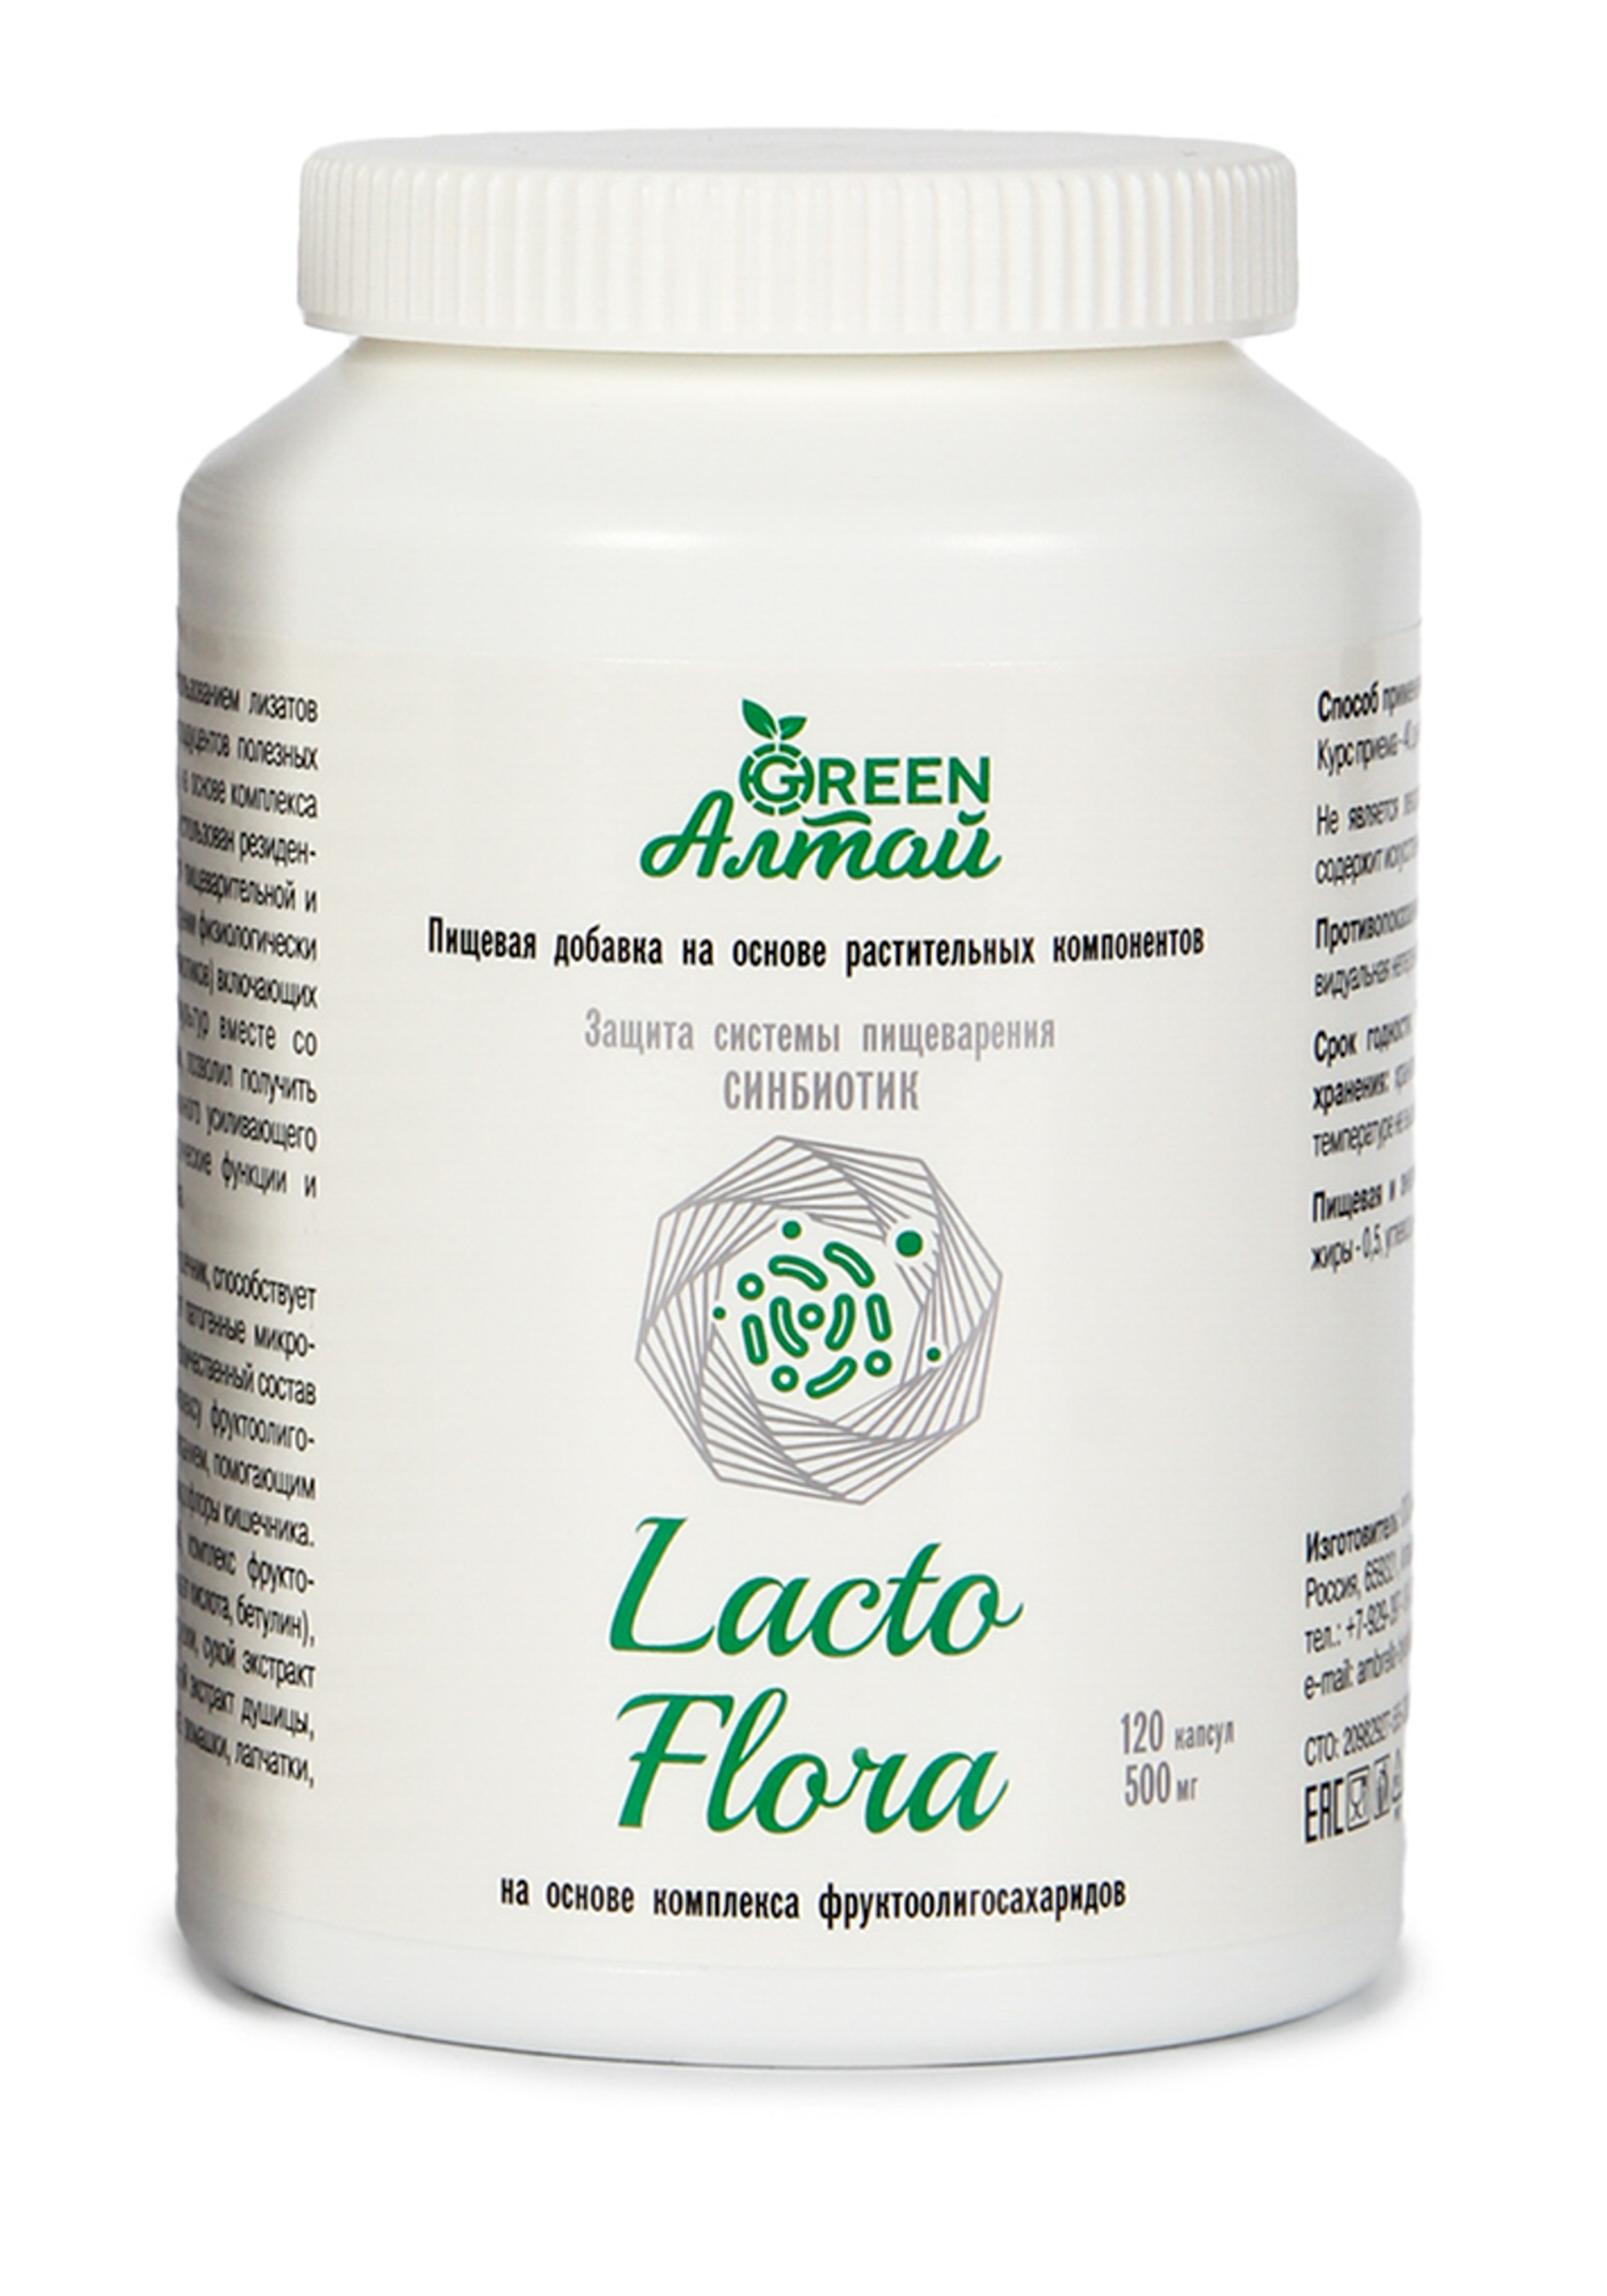 Lacto Flora "Защита пищеварения,синбиотик" Green Алтай - фото 1